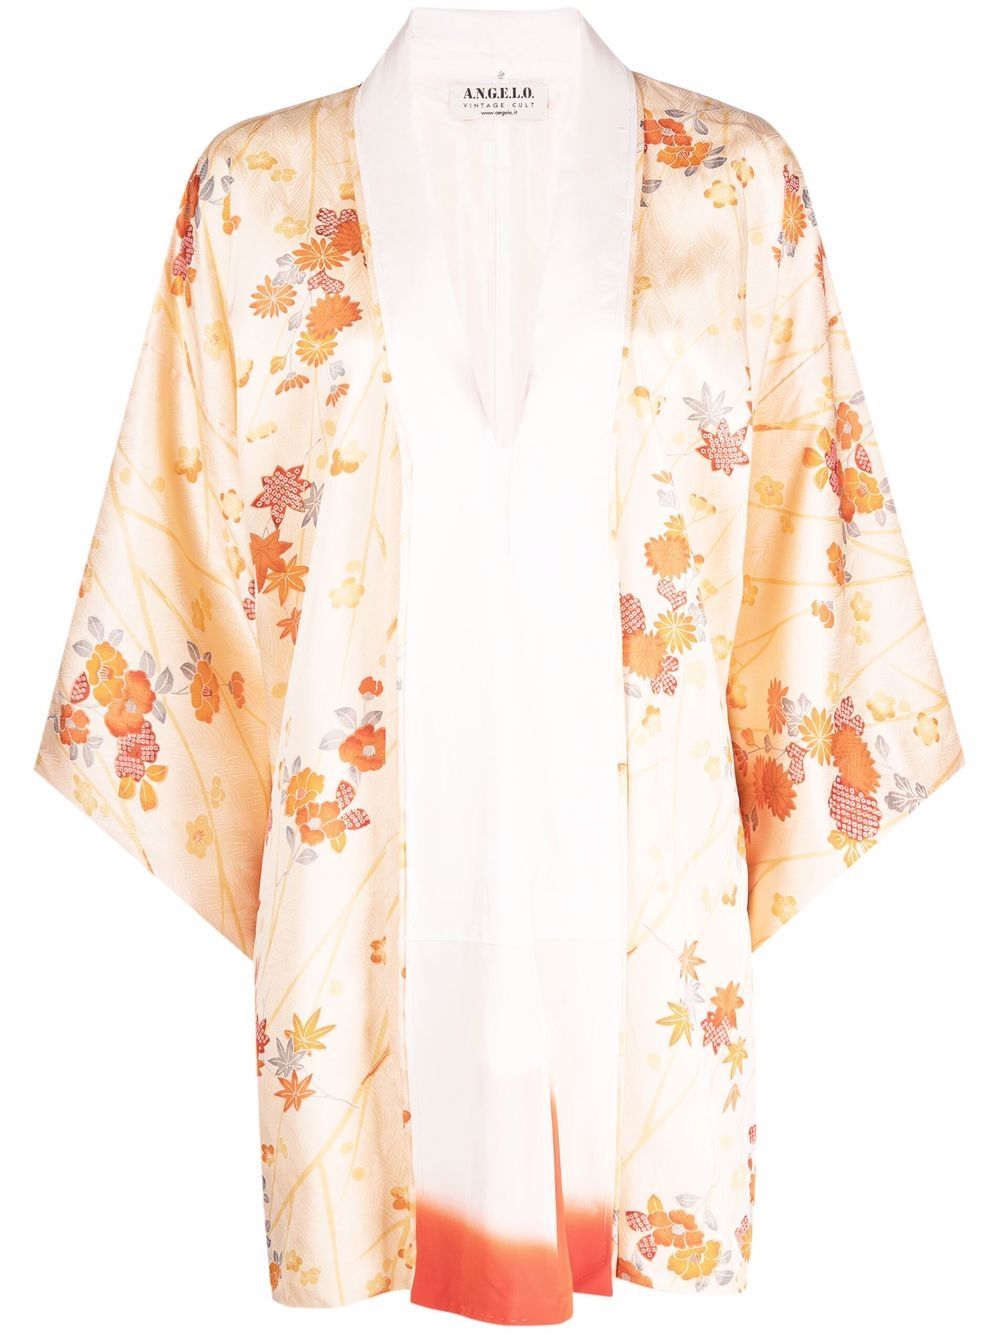 фото A.n.g.e.l.o. vintage cult шелковое кимоно 1970-х годов с цветочным принтом